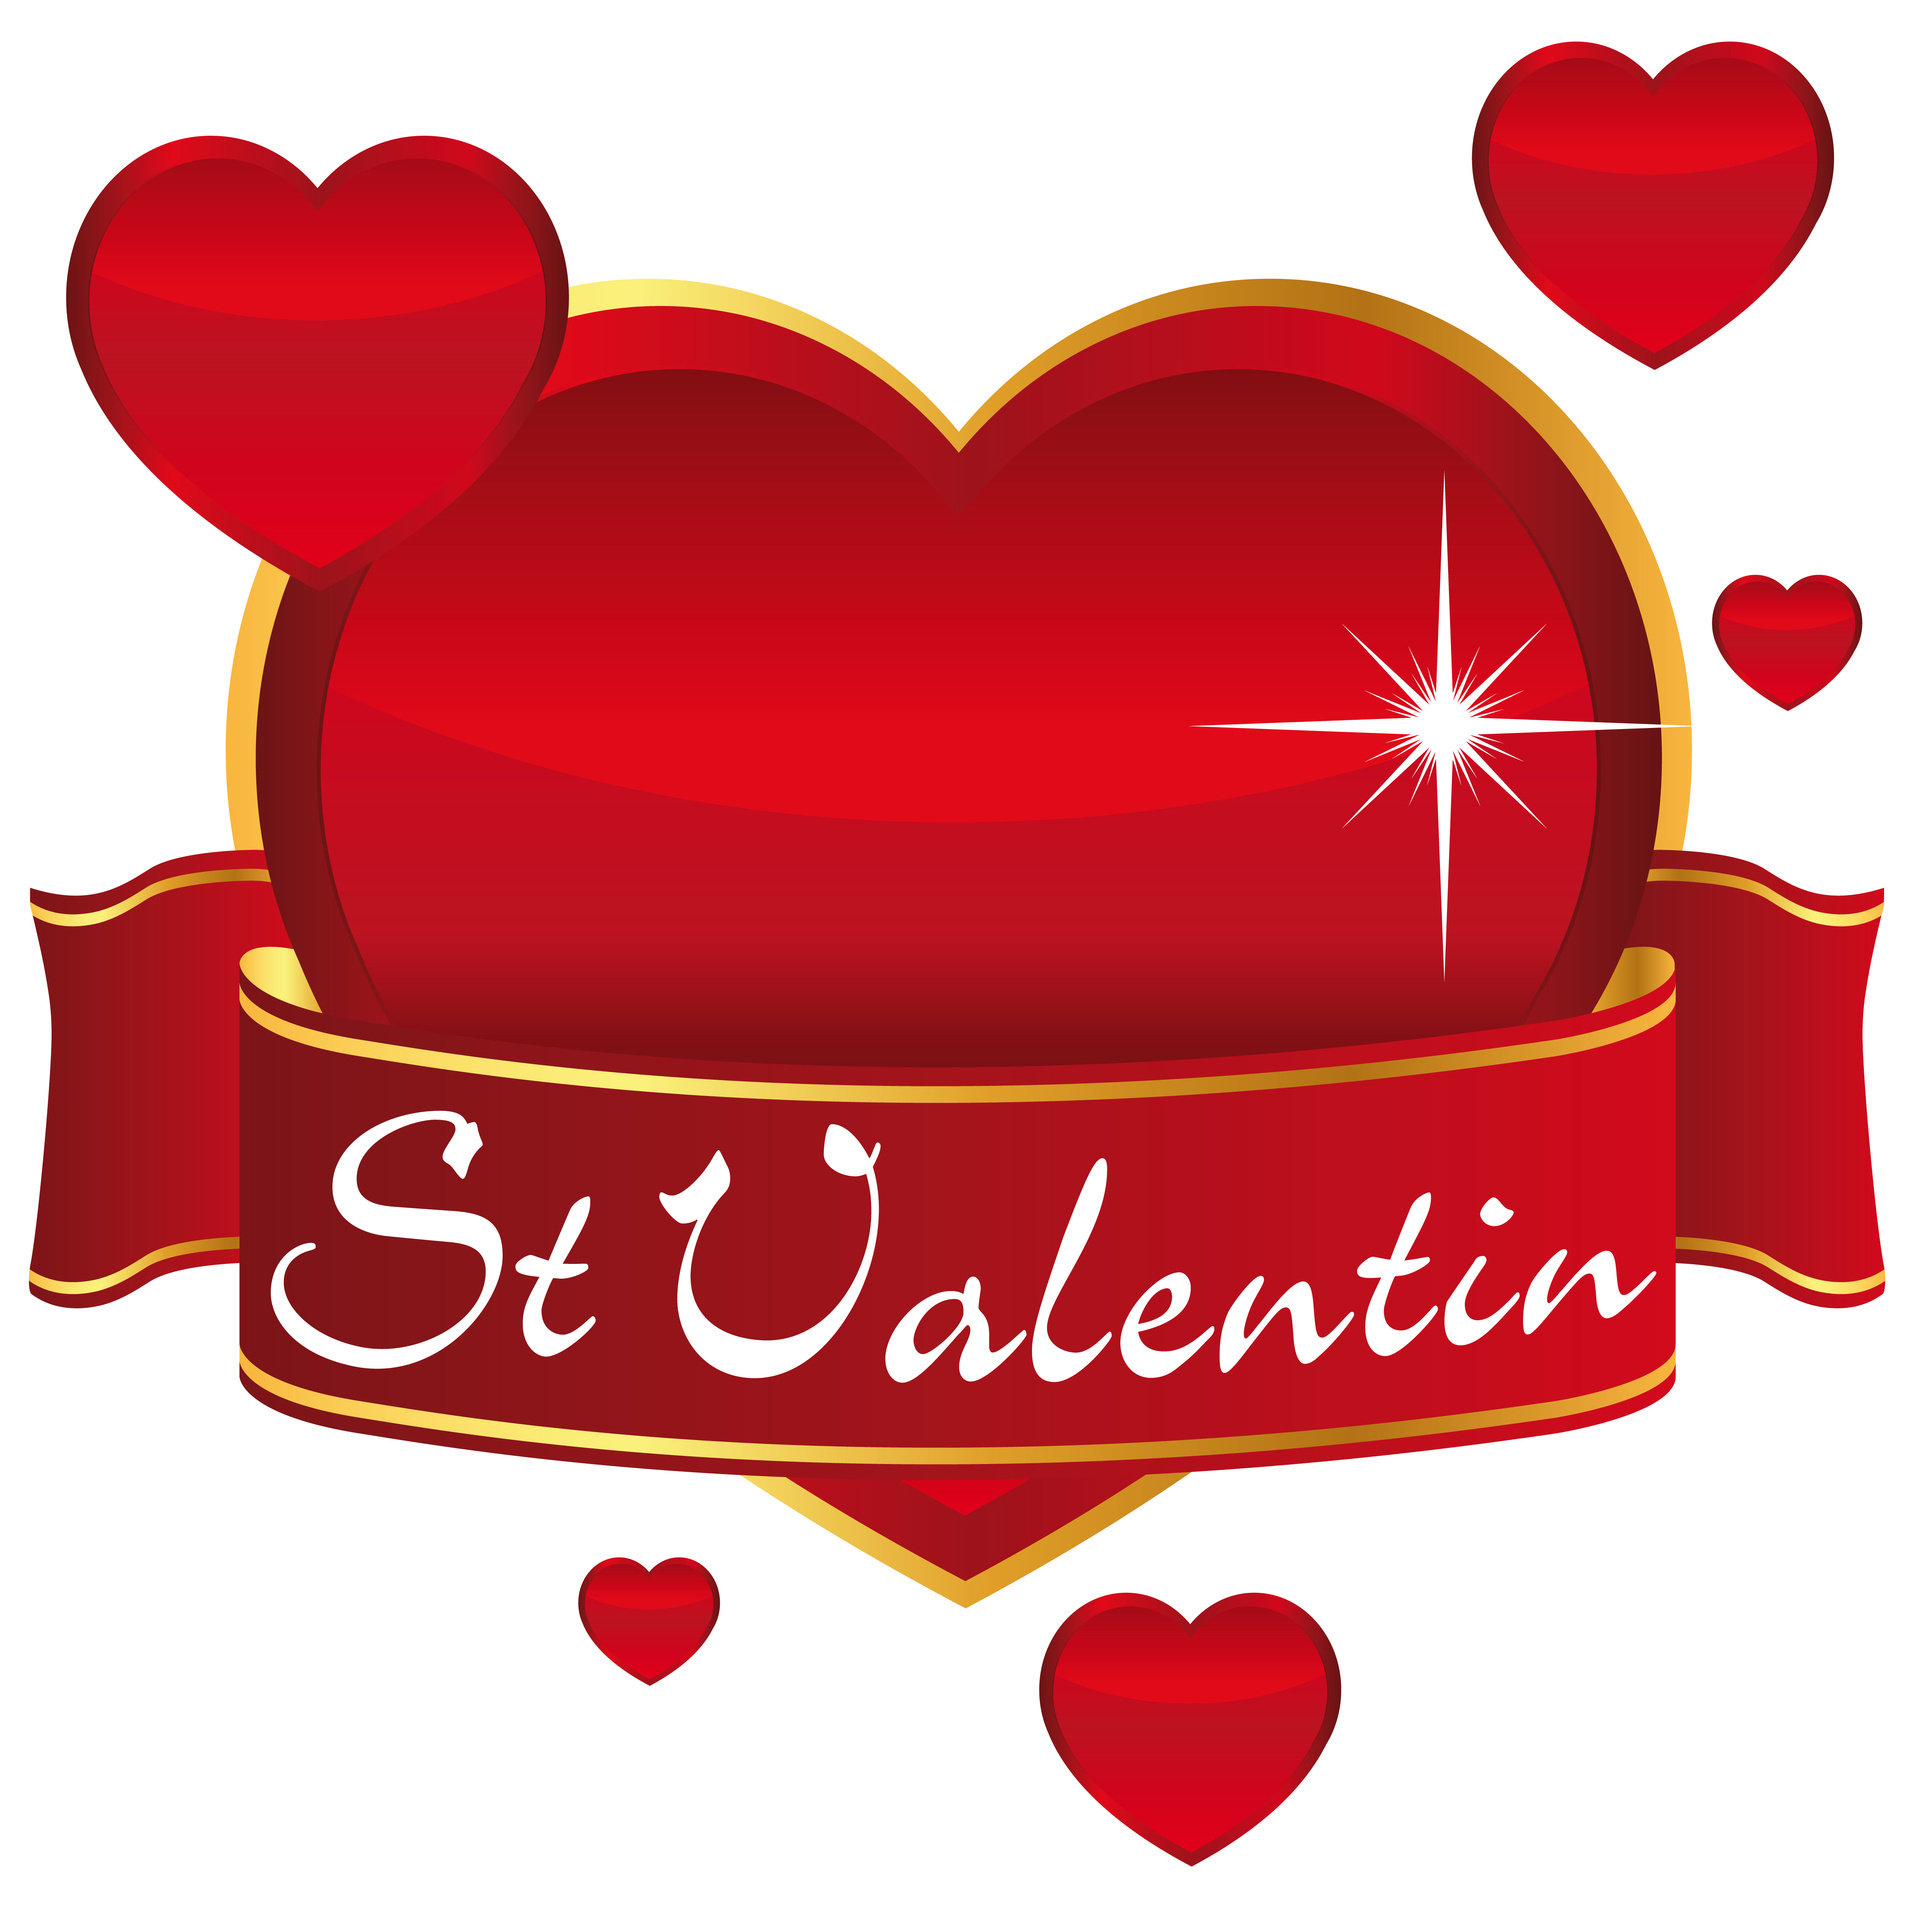 La St-Valentin : De L&amp;#039;Amitié À La Passion, Déclinez Votre dedans Mots Croises De La St-Valentin 